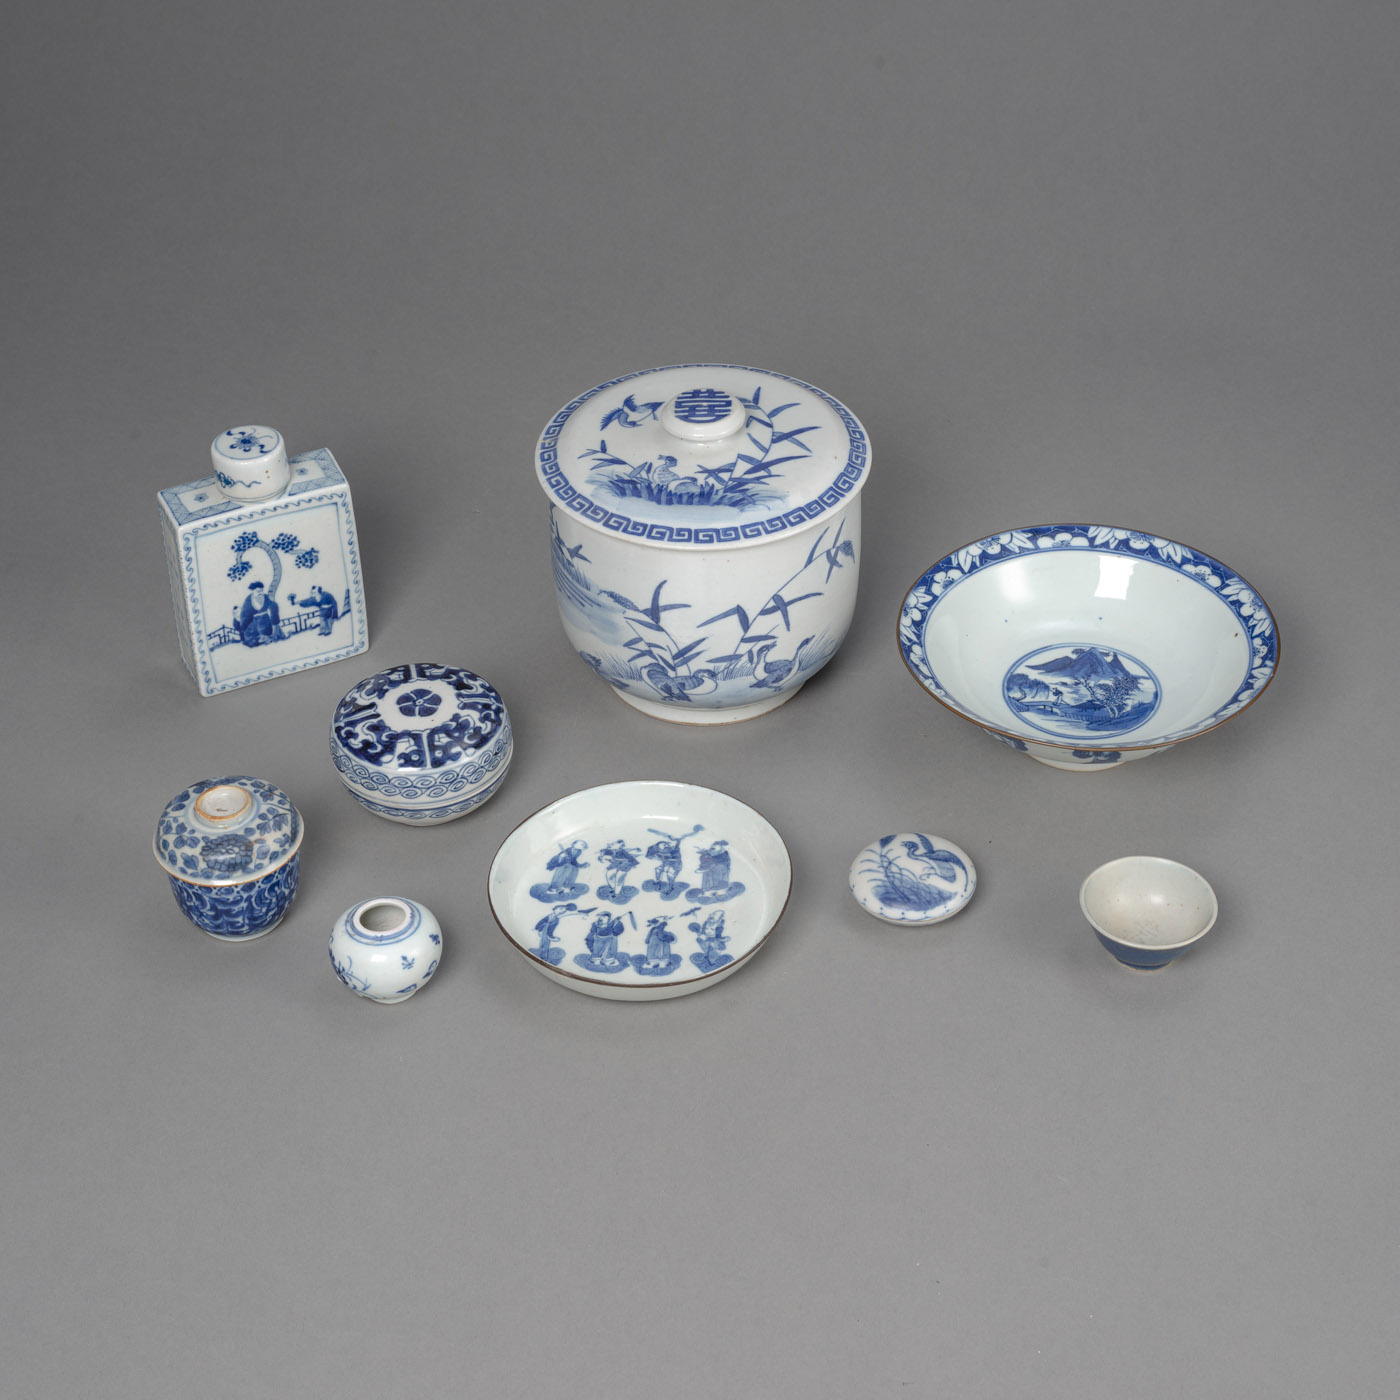 <b>Gruppe unterglasurblau dekorierte Porzellane: Vier Deckeldosen, drei Schalen, eine Teedose und ein Väschen</b>